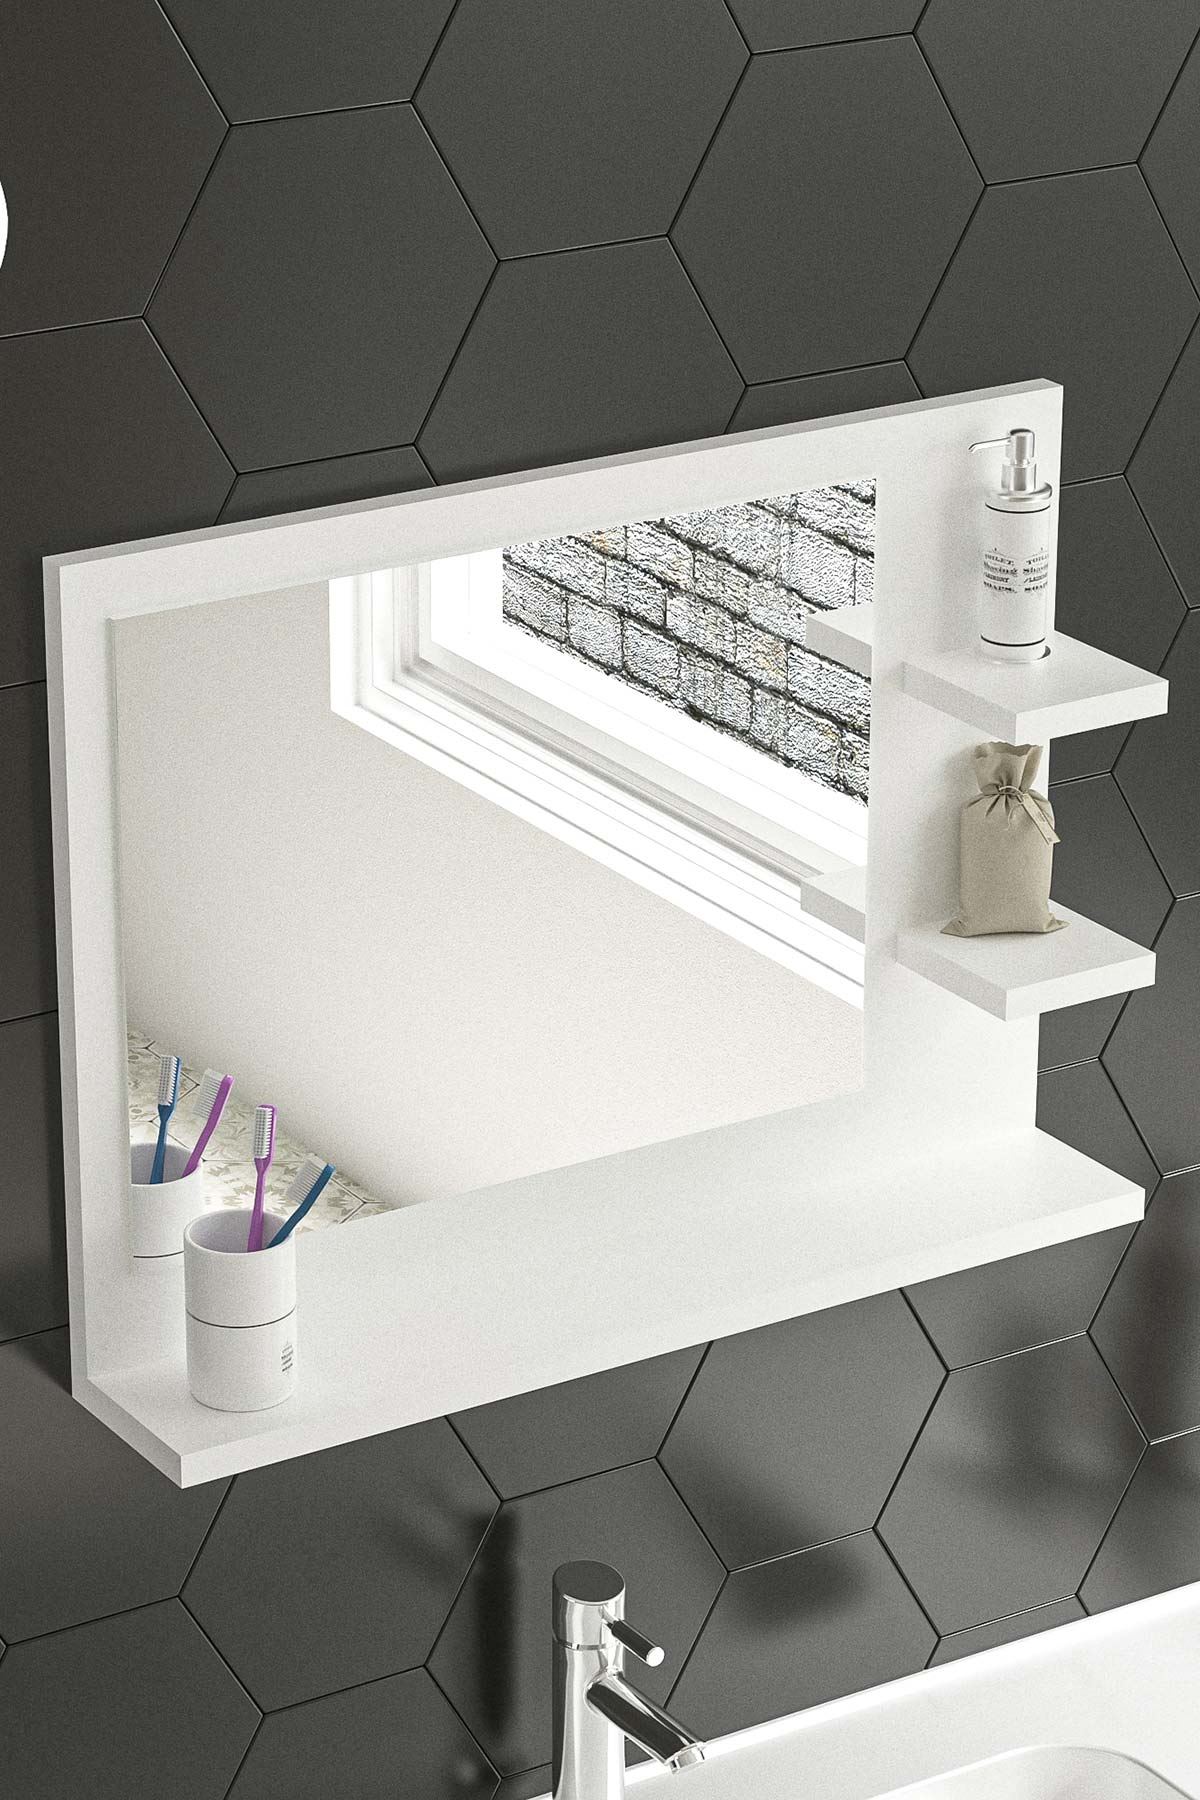 Bofigo 60x45 Cm Genova Banyo Rafı Lavabo Rafı Aynalı Raf Banyo Aynası Beyaz